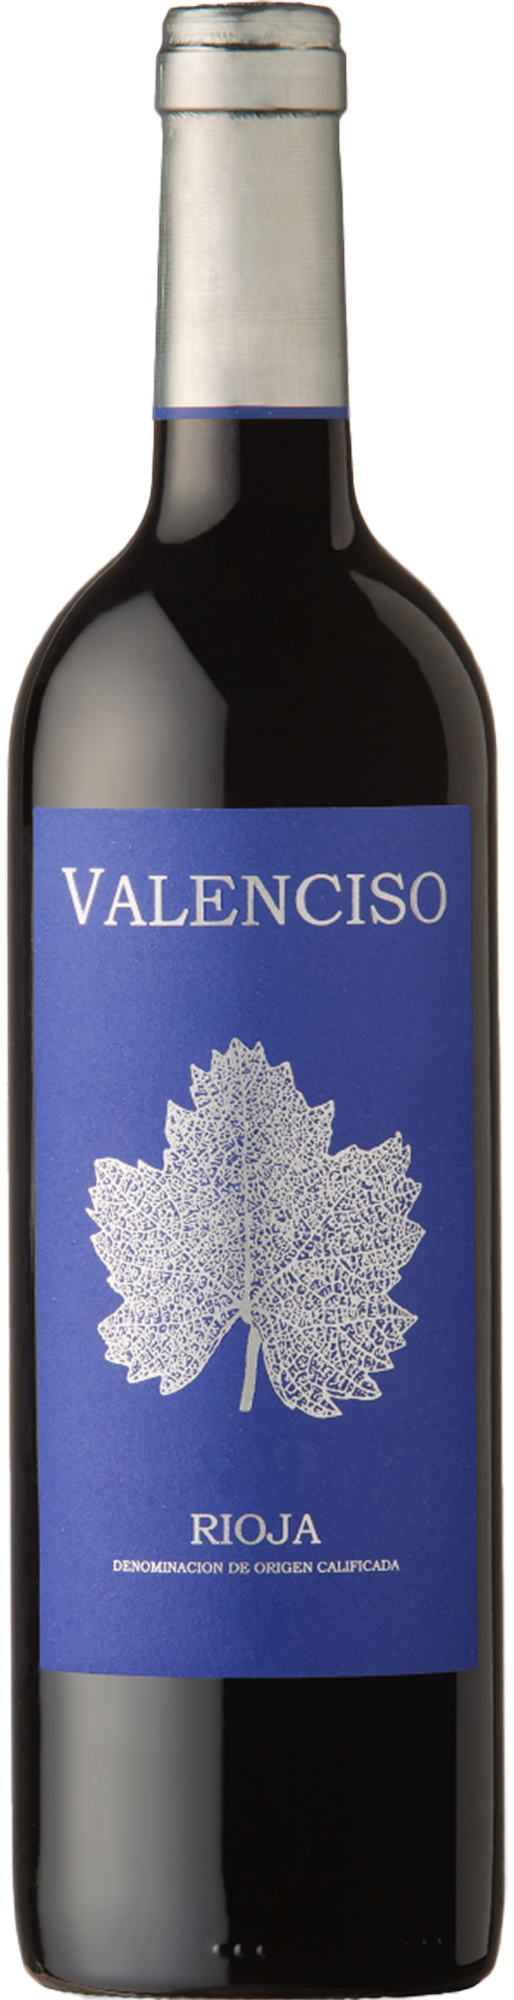 Valenciso Rioja Reserva 2018